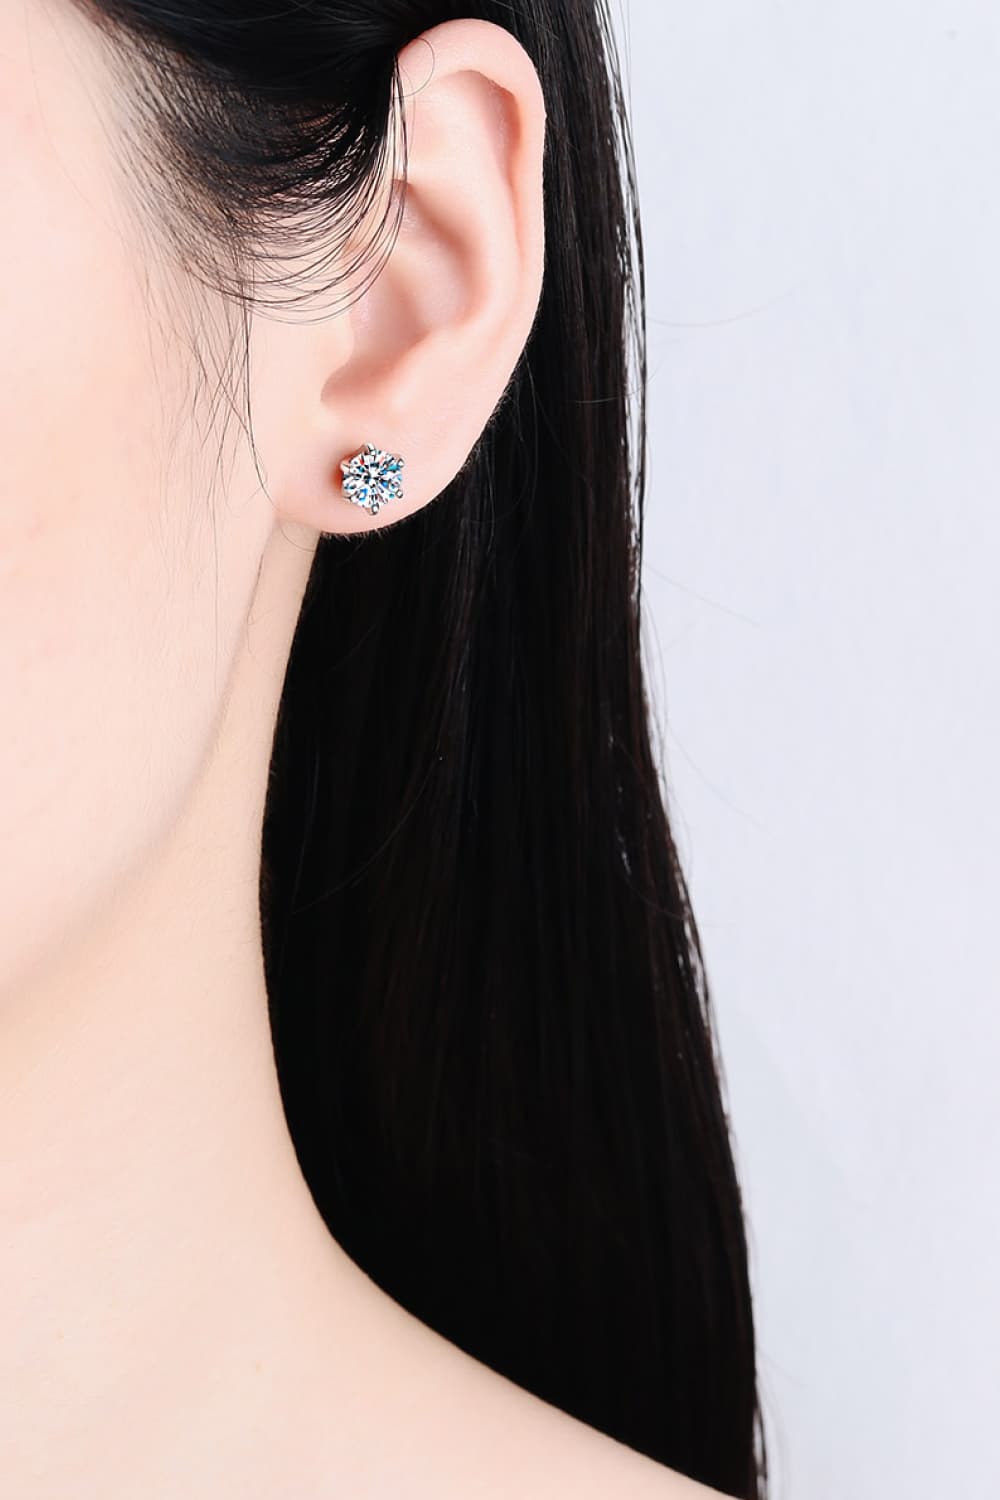 1 Carat Moissanite Rhodium-Plated Stud Earrings - Earrings - FITGGINS